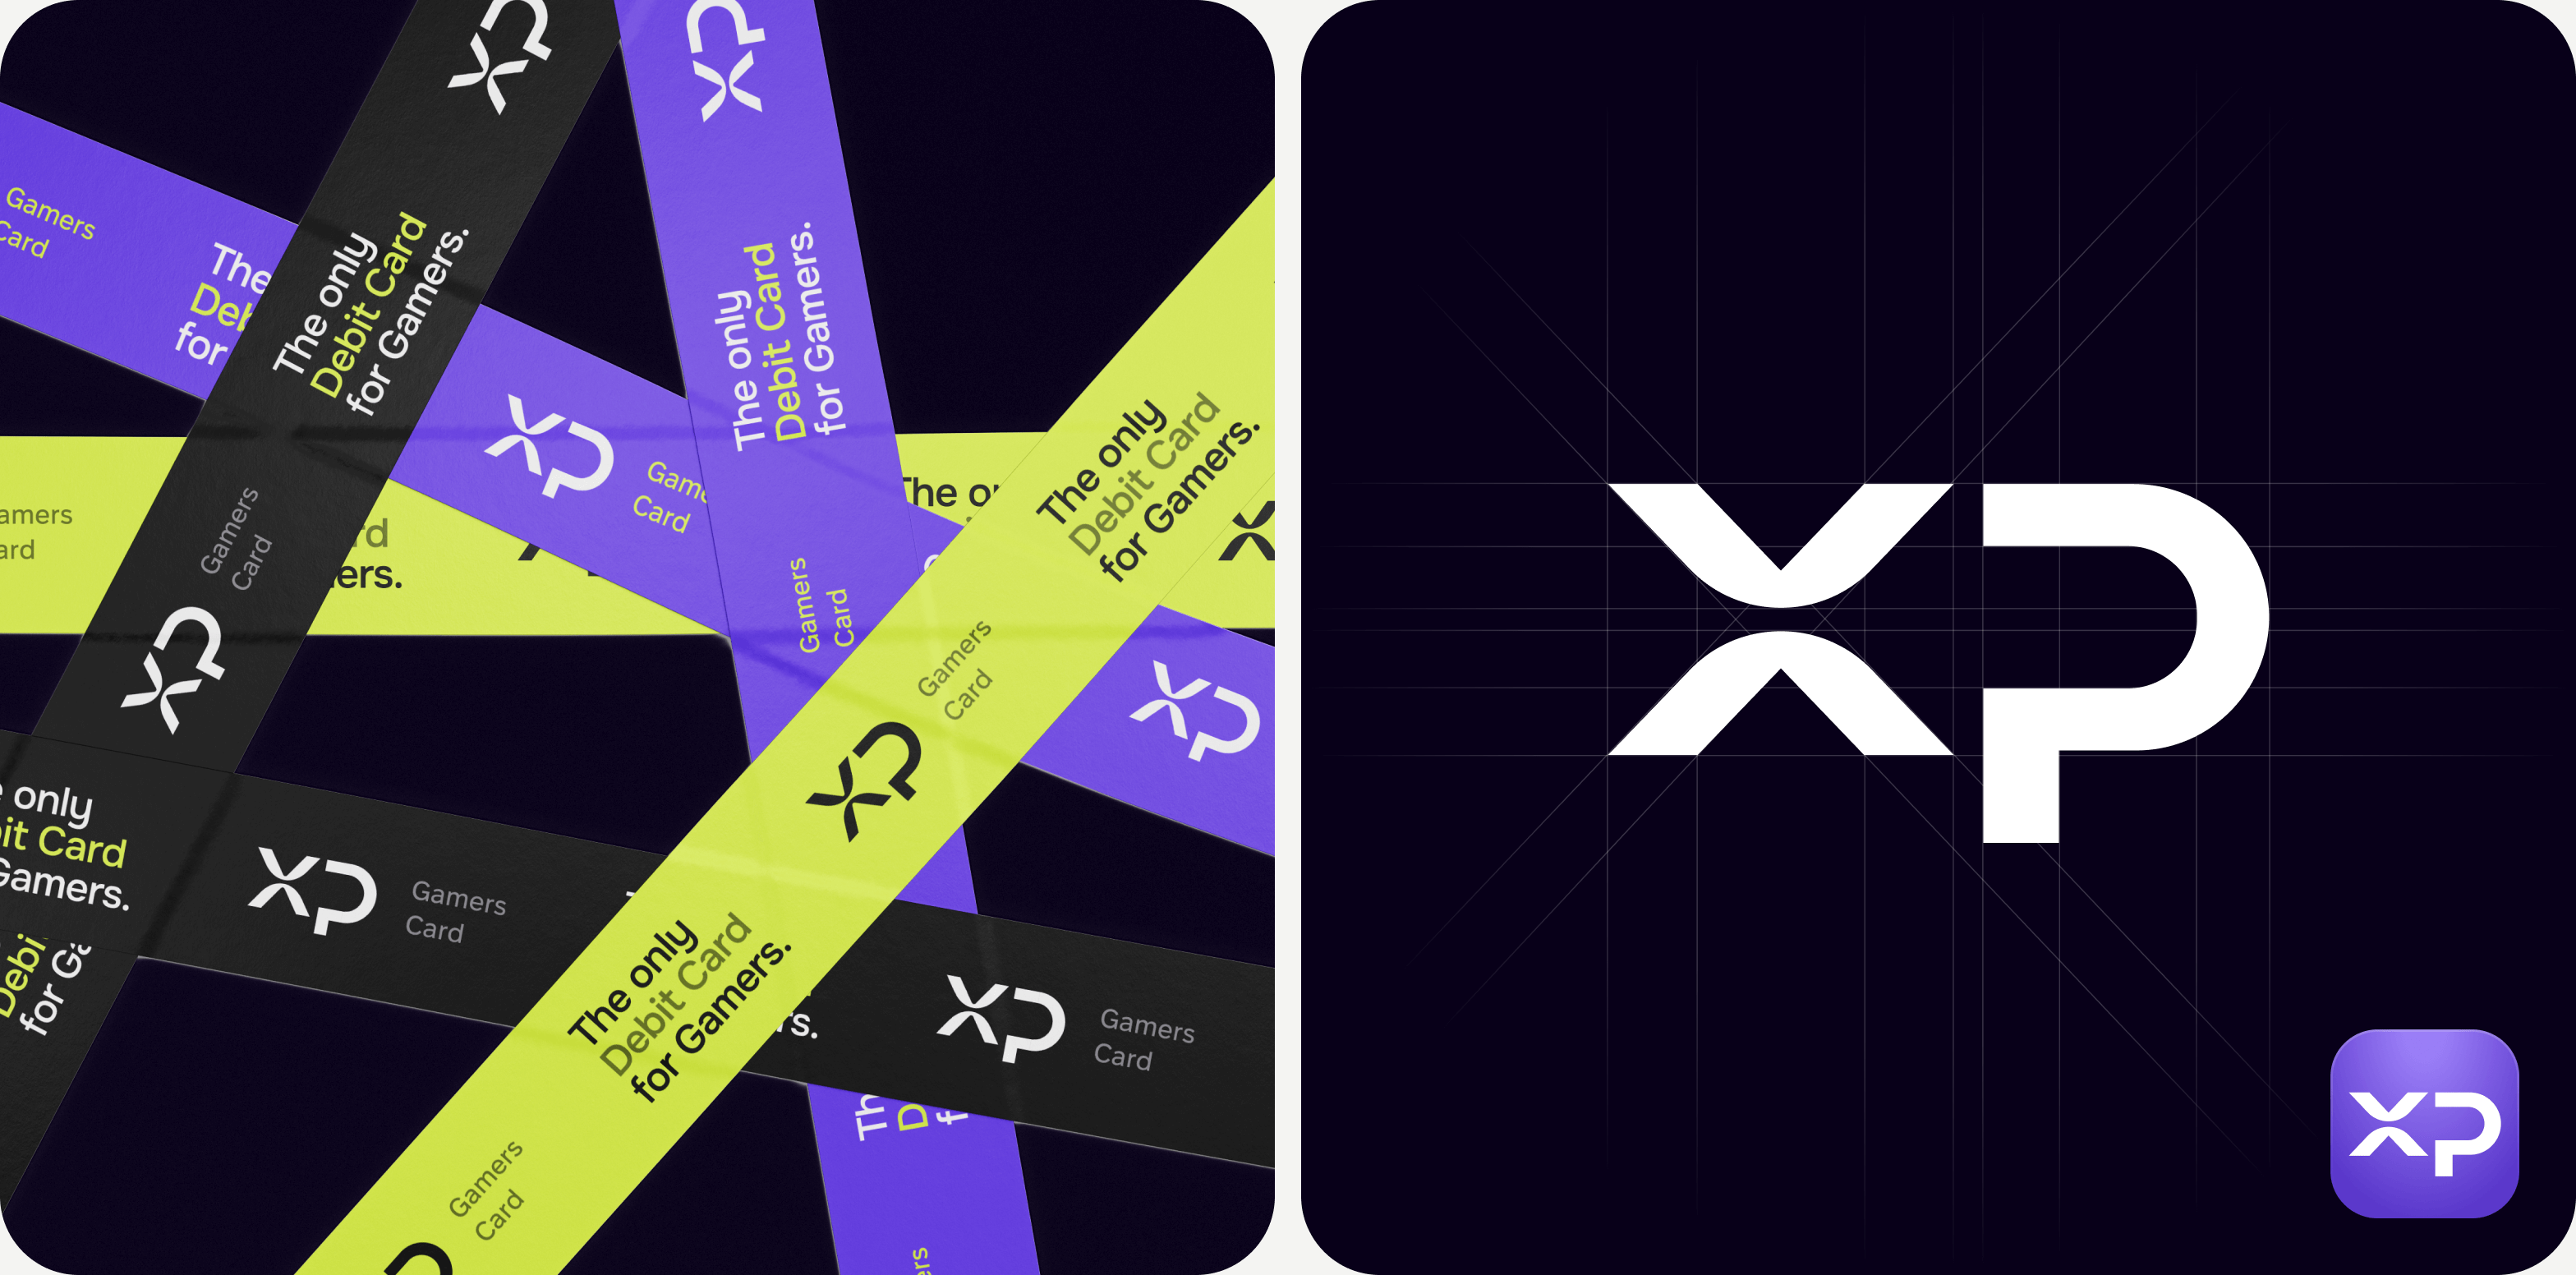 Goodface agency, case XP, logo & brand identity.png - XP games card проект: Розробка лого та айдентики, UX/UI дизайн та розробка веб-сайту для фінтех-стартапу в кіберспортивній індустрії – Goodface agency  - goodface.agency